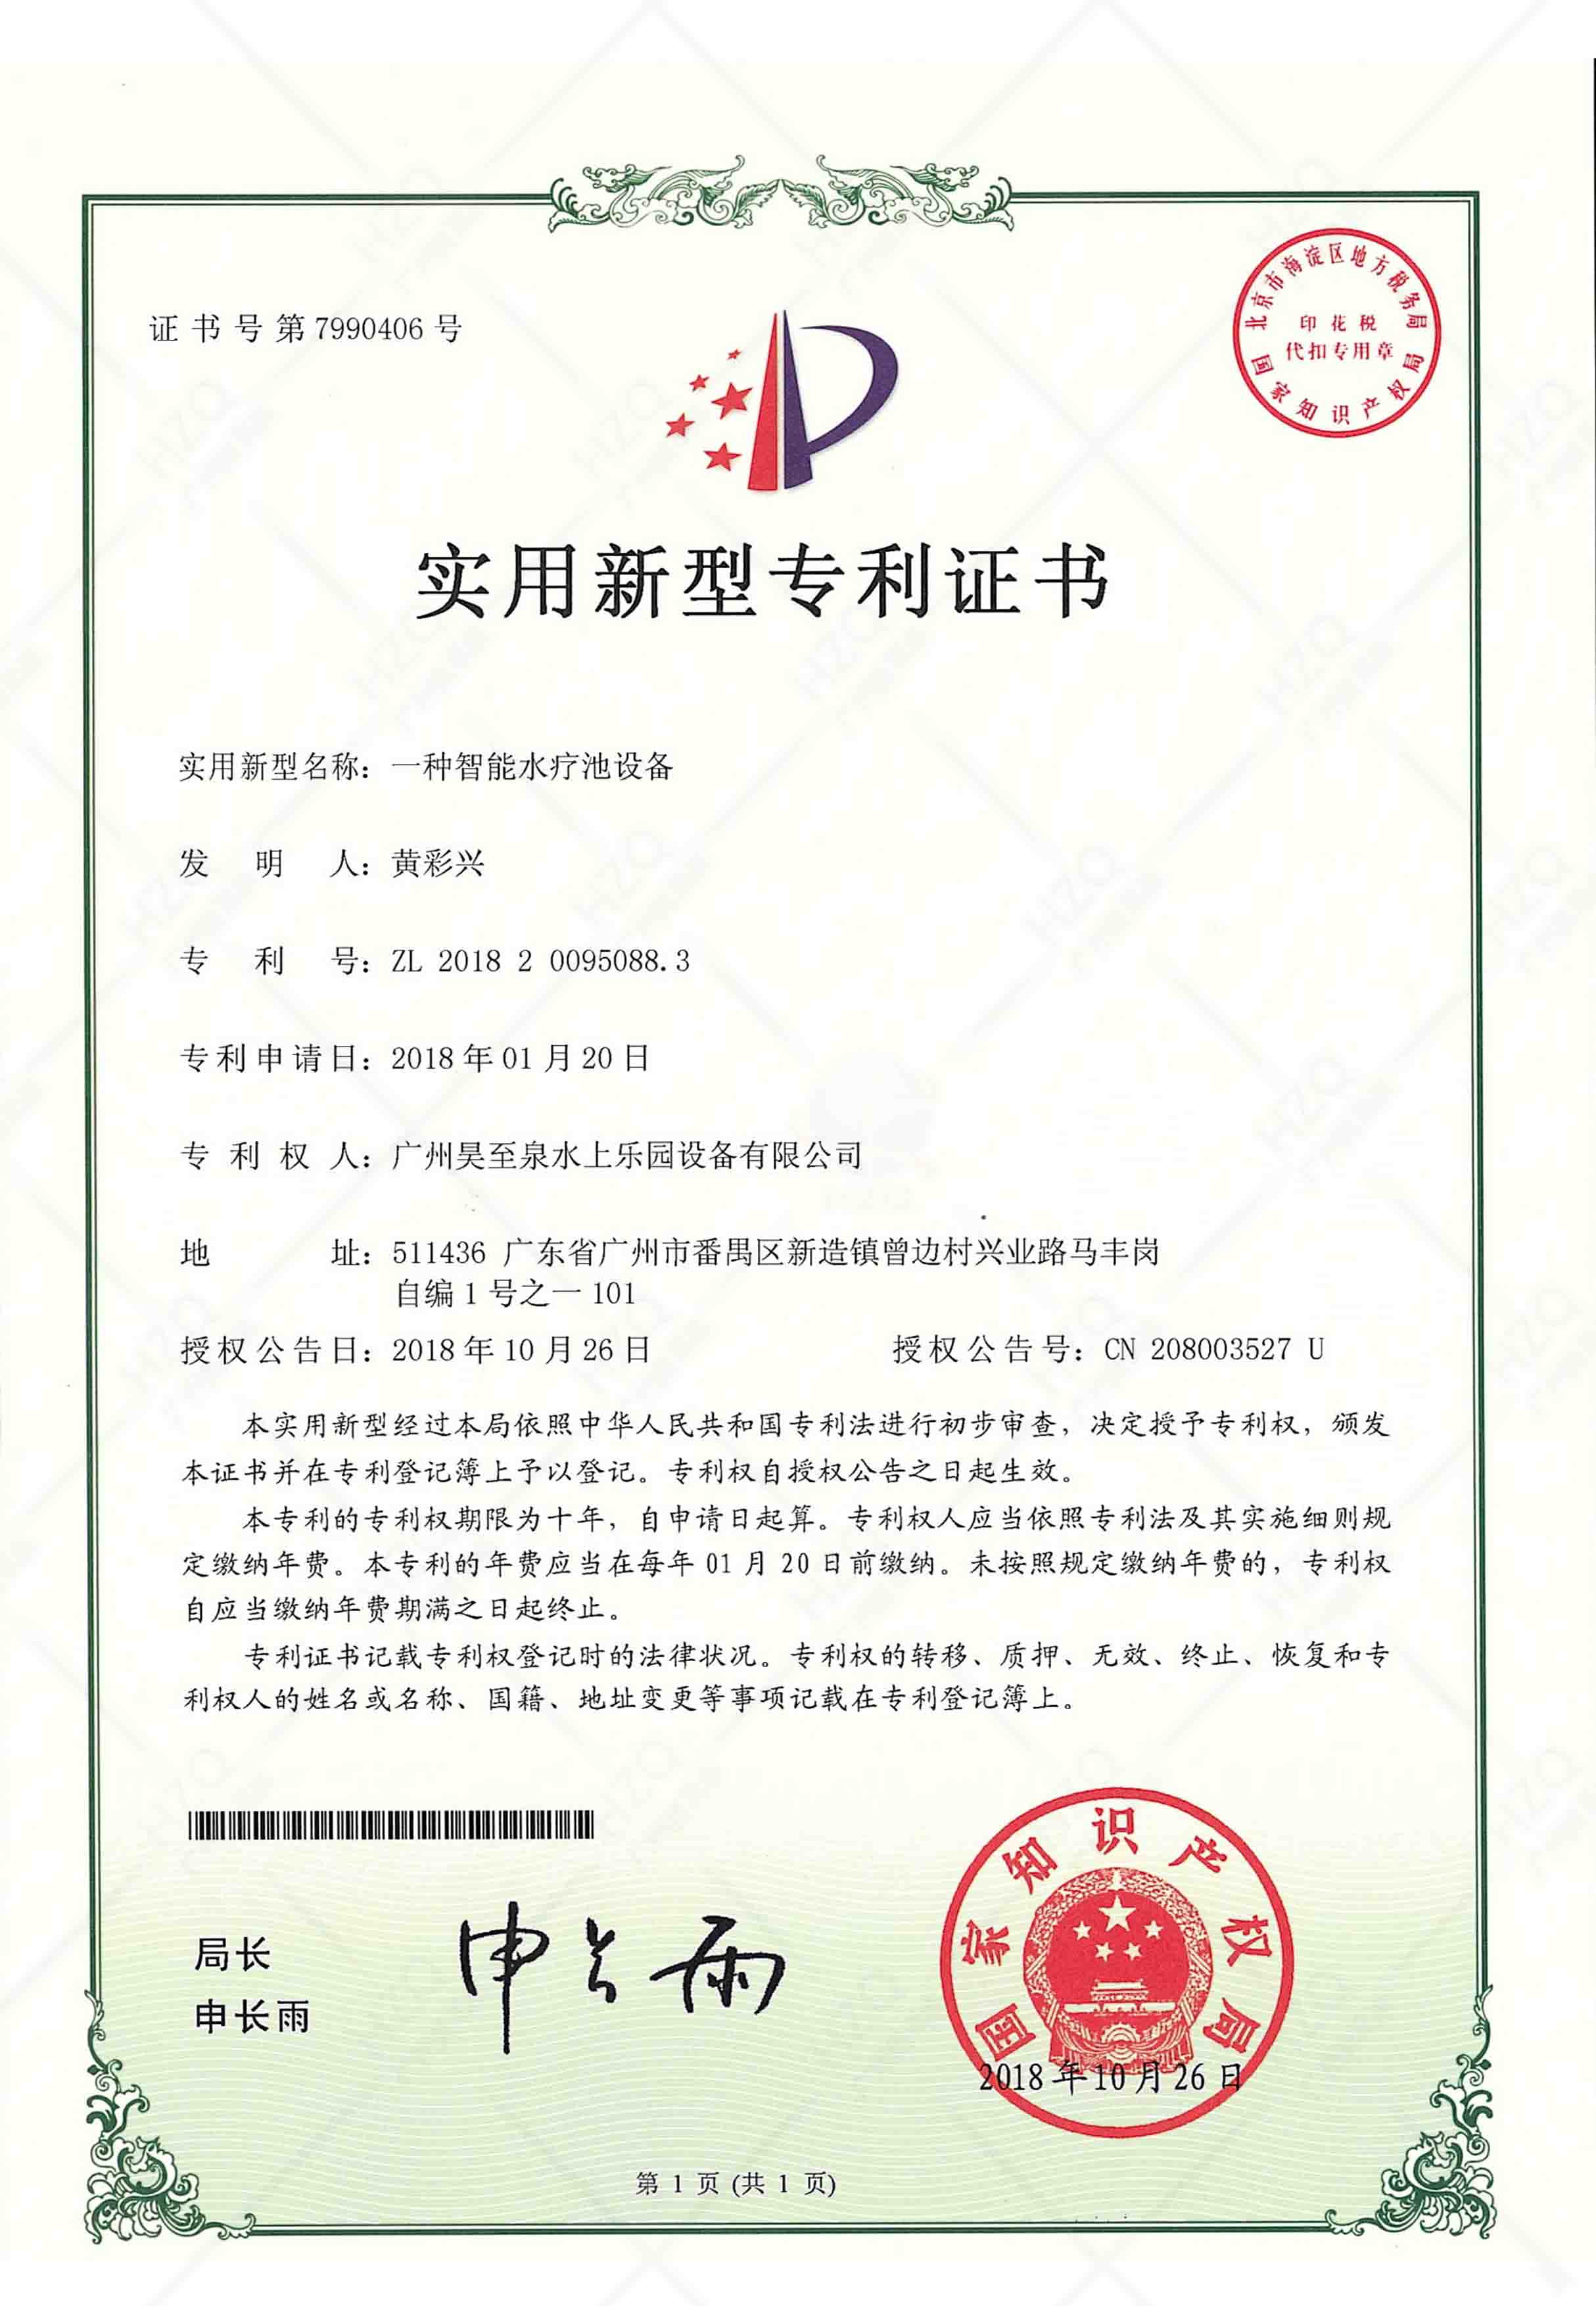 温泉水疗技术专利证书